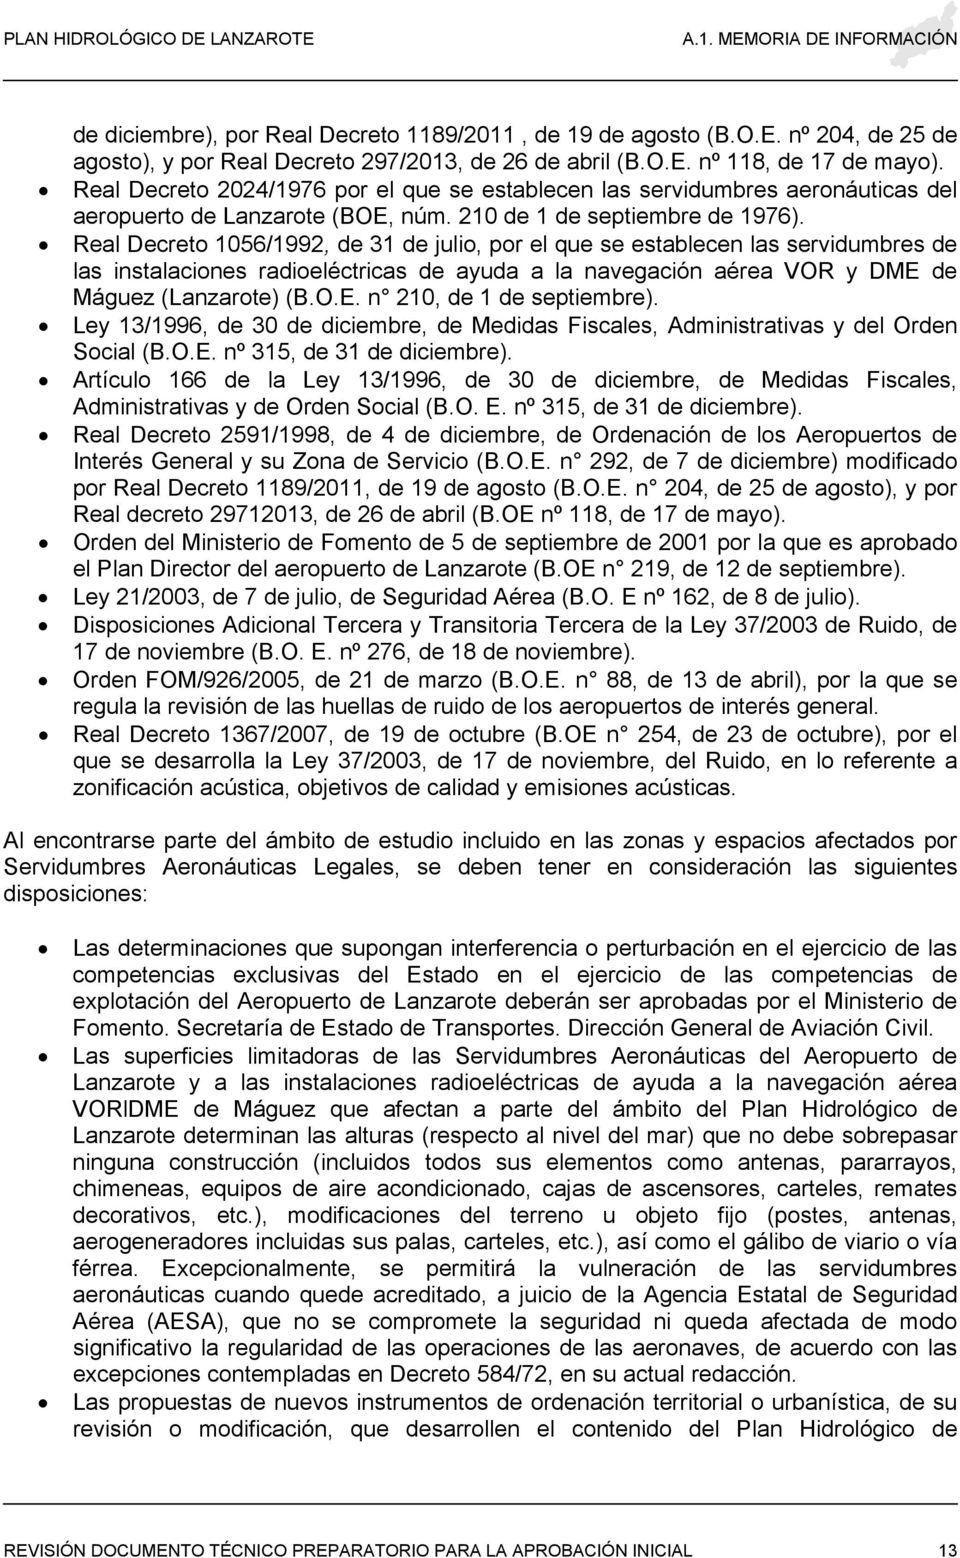 Real Decreto 1056/1992, de 31 de julio, por el que se establecen las servidumbres de las instalaciones radioeléctricas de ayuda a la navegación aérea VOR y DME de Máguez (Lanzarote) (B.O.E. n 210, de 1 de septiembre).